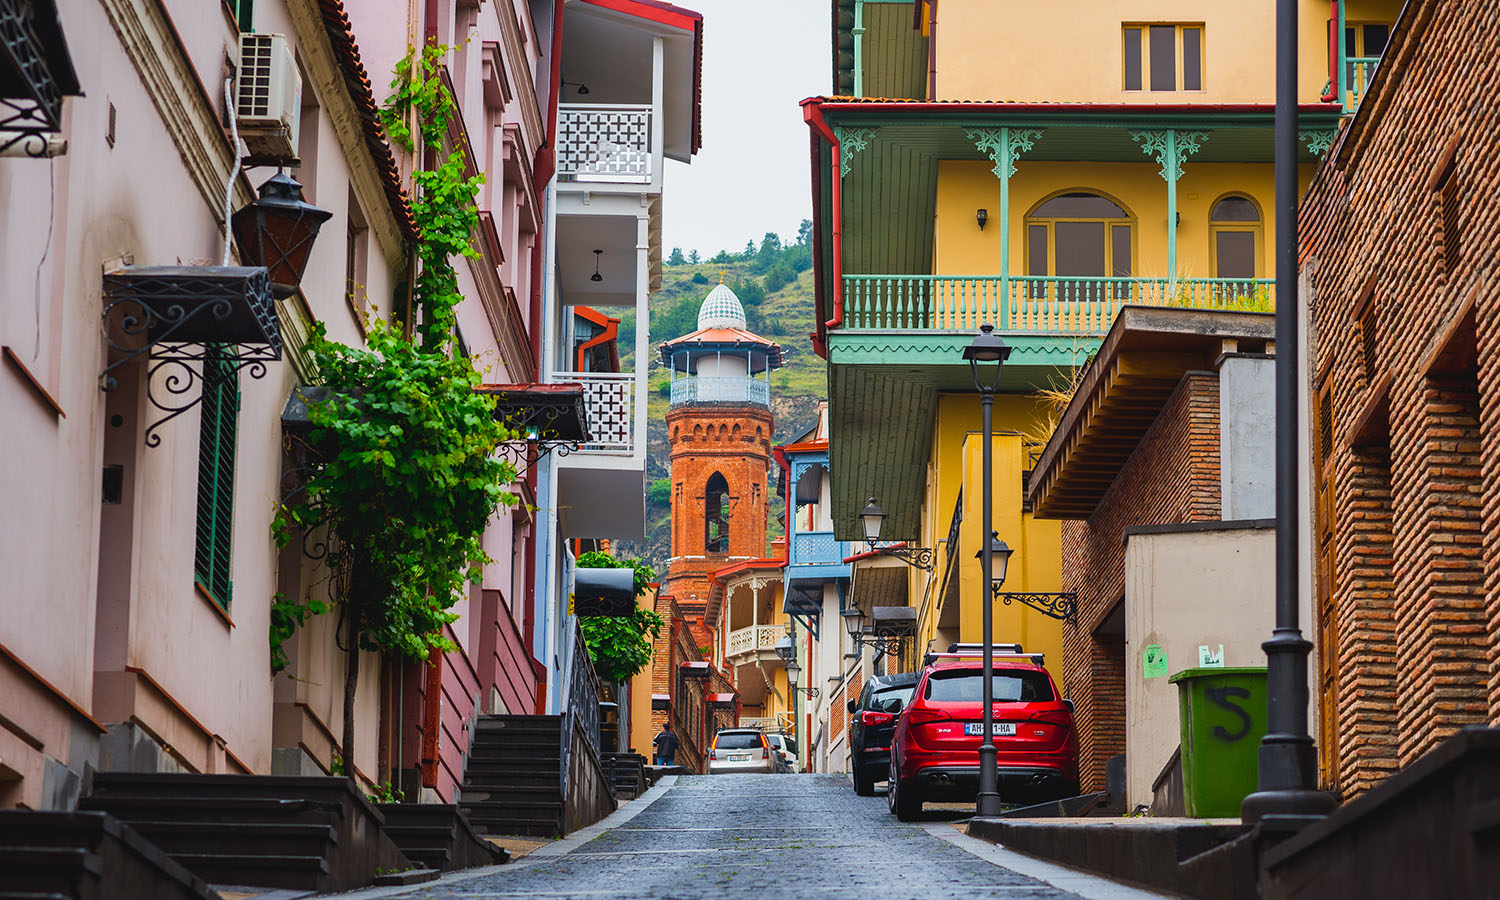 Exploring the Vibrant Pekini Street of Tbilisi